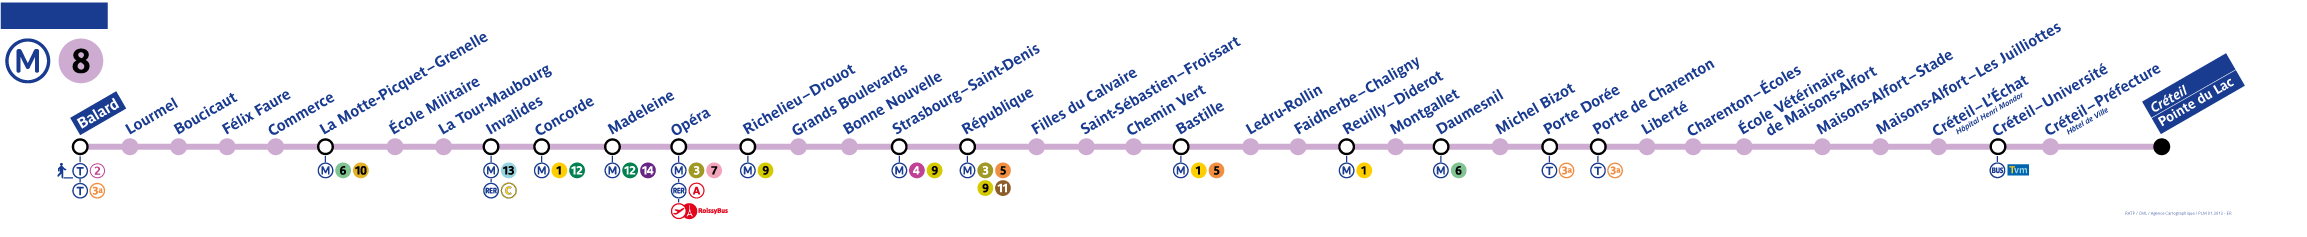 Paris Metro Line 8 Map - Paris Metro Map